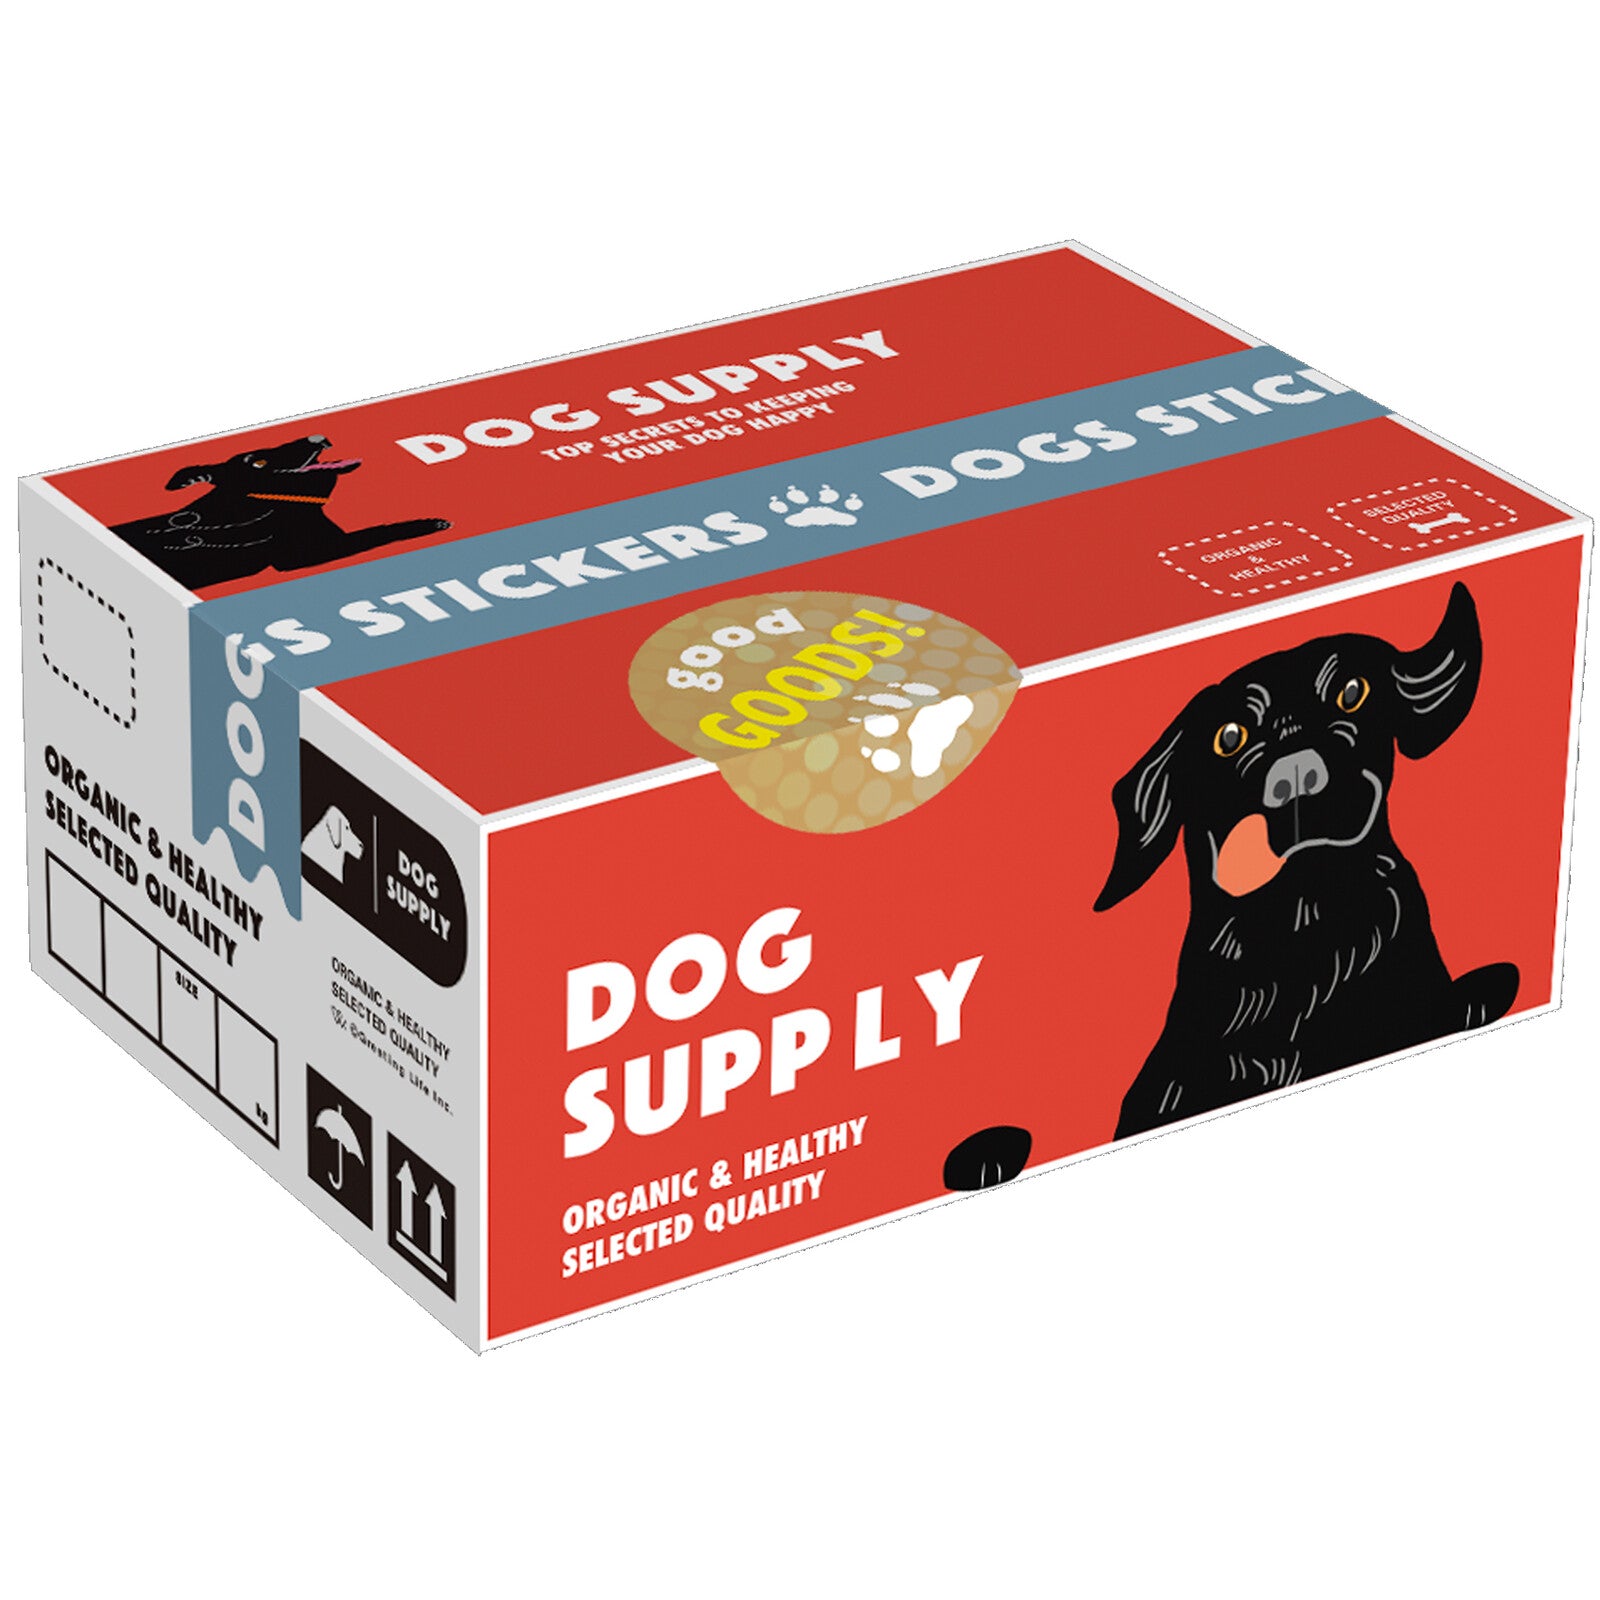 Miniature Shipping Box Flake Sticker Set - Dog Products – Saiko